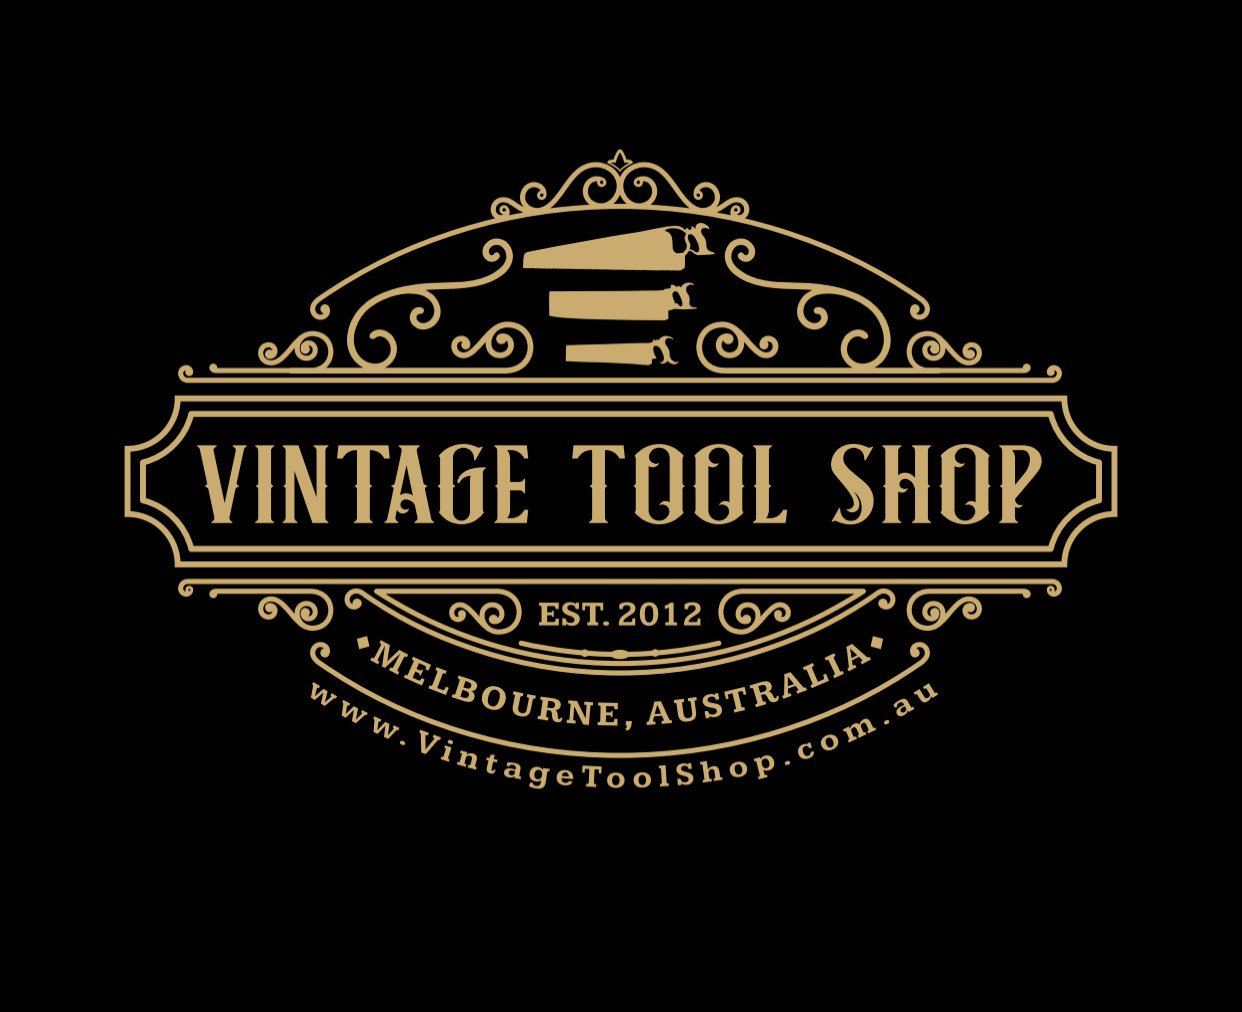 Vintage Tool Shop Melbourne Australia www.VintageToolShop.com.au Established 2012 gold black logo